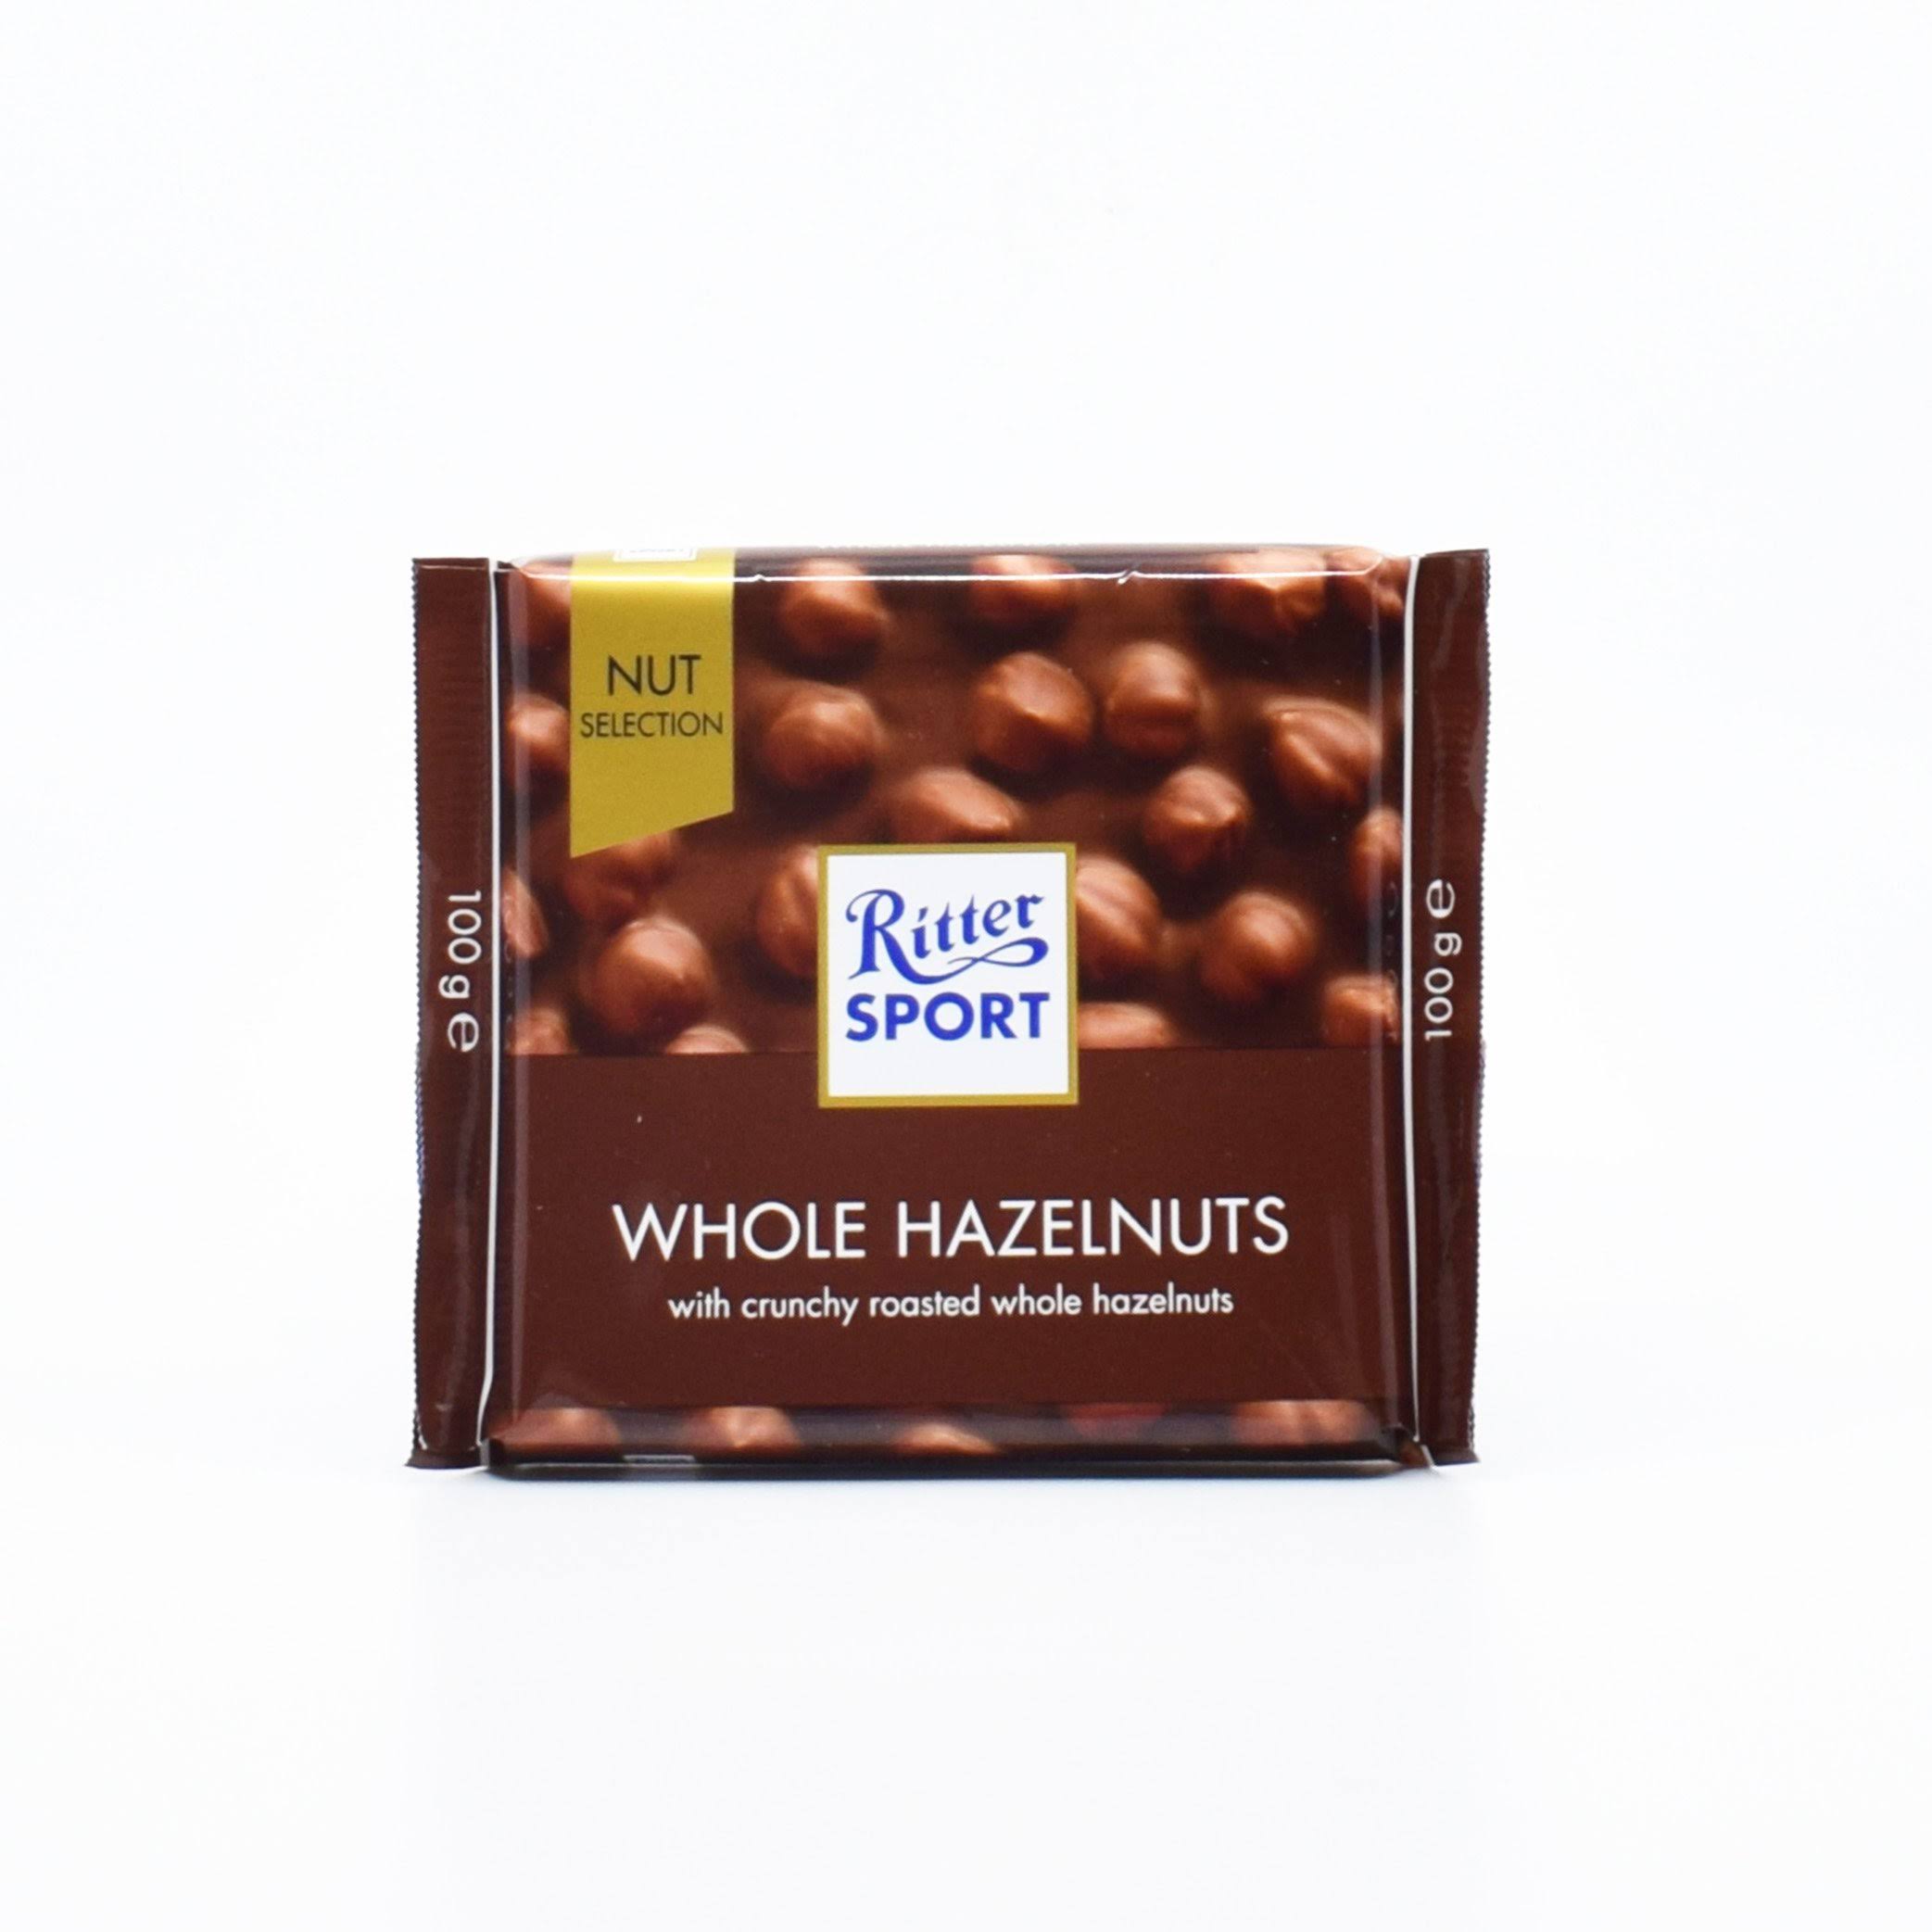 Ritter Sport Whole Hazelnuts Chocolate - 100g